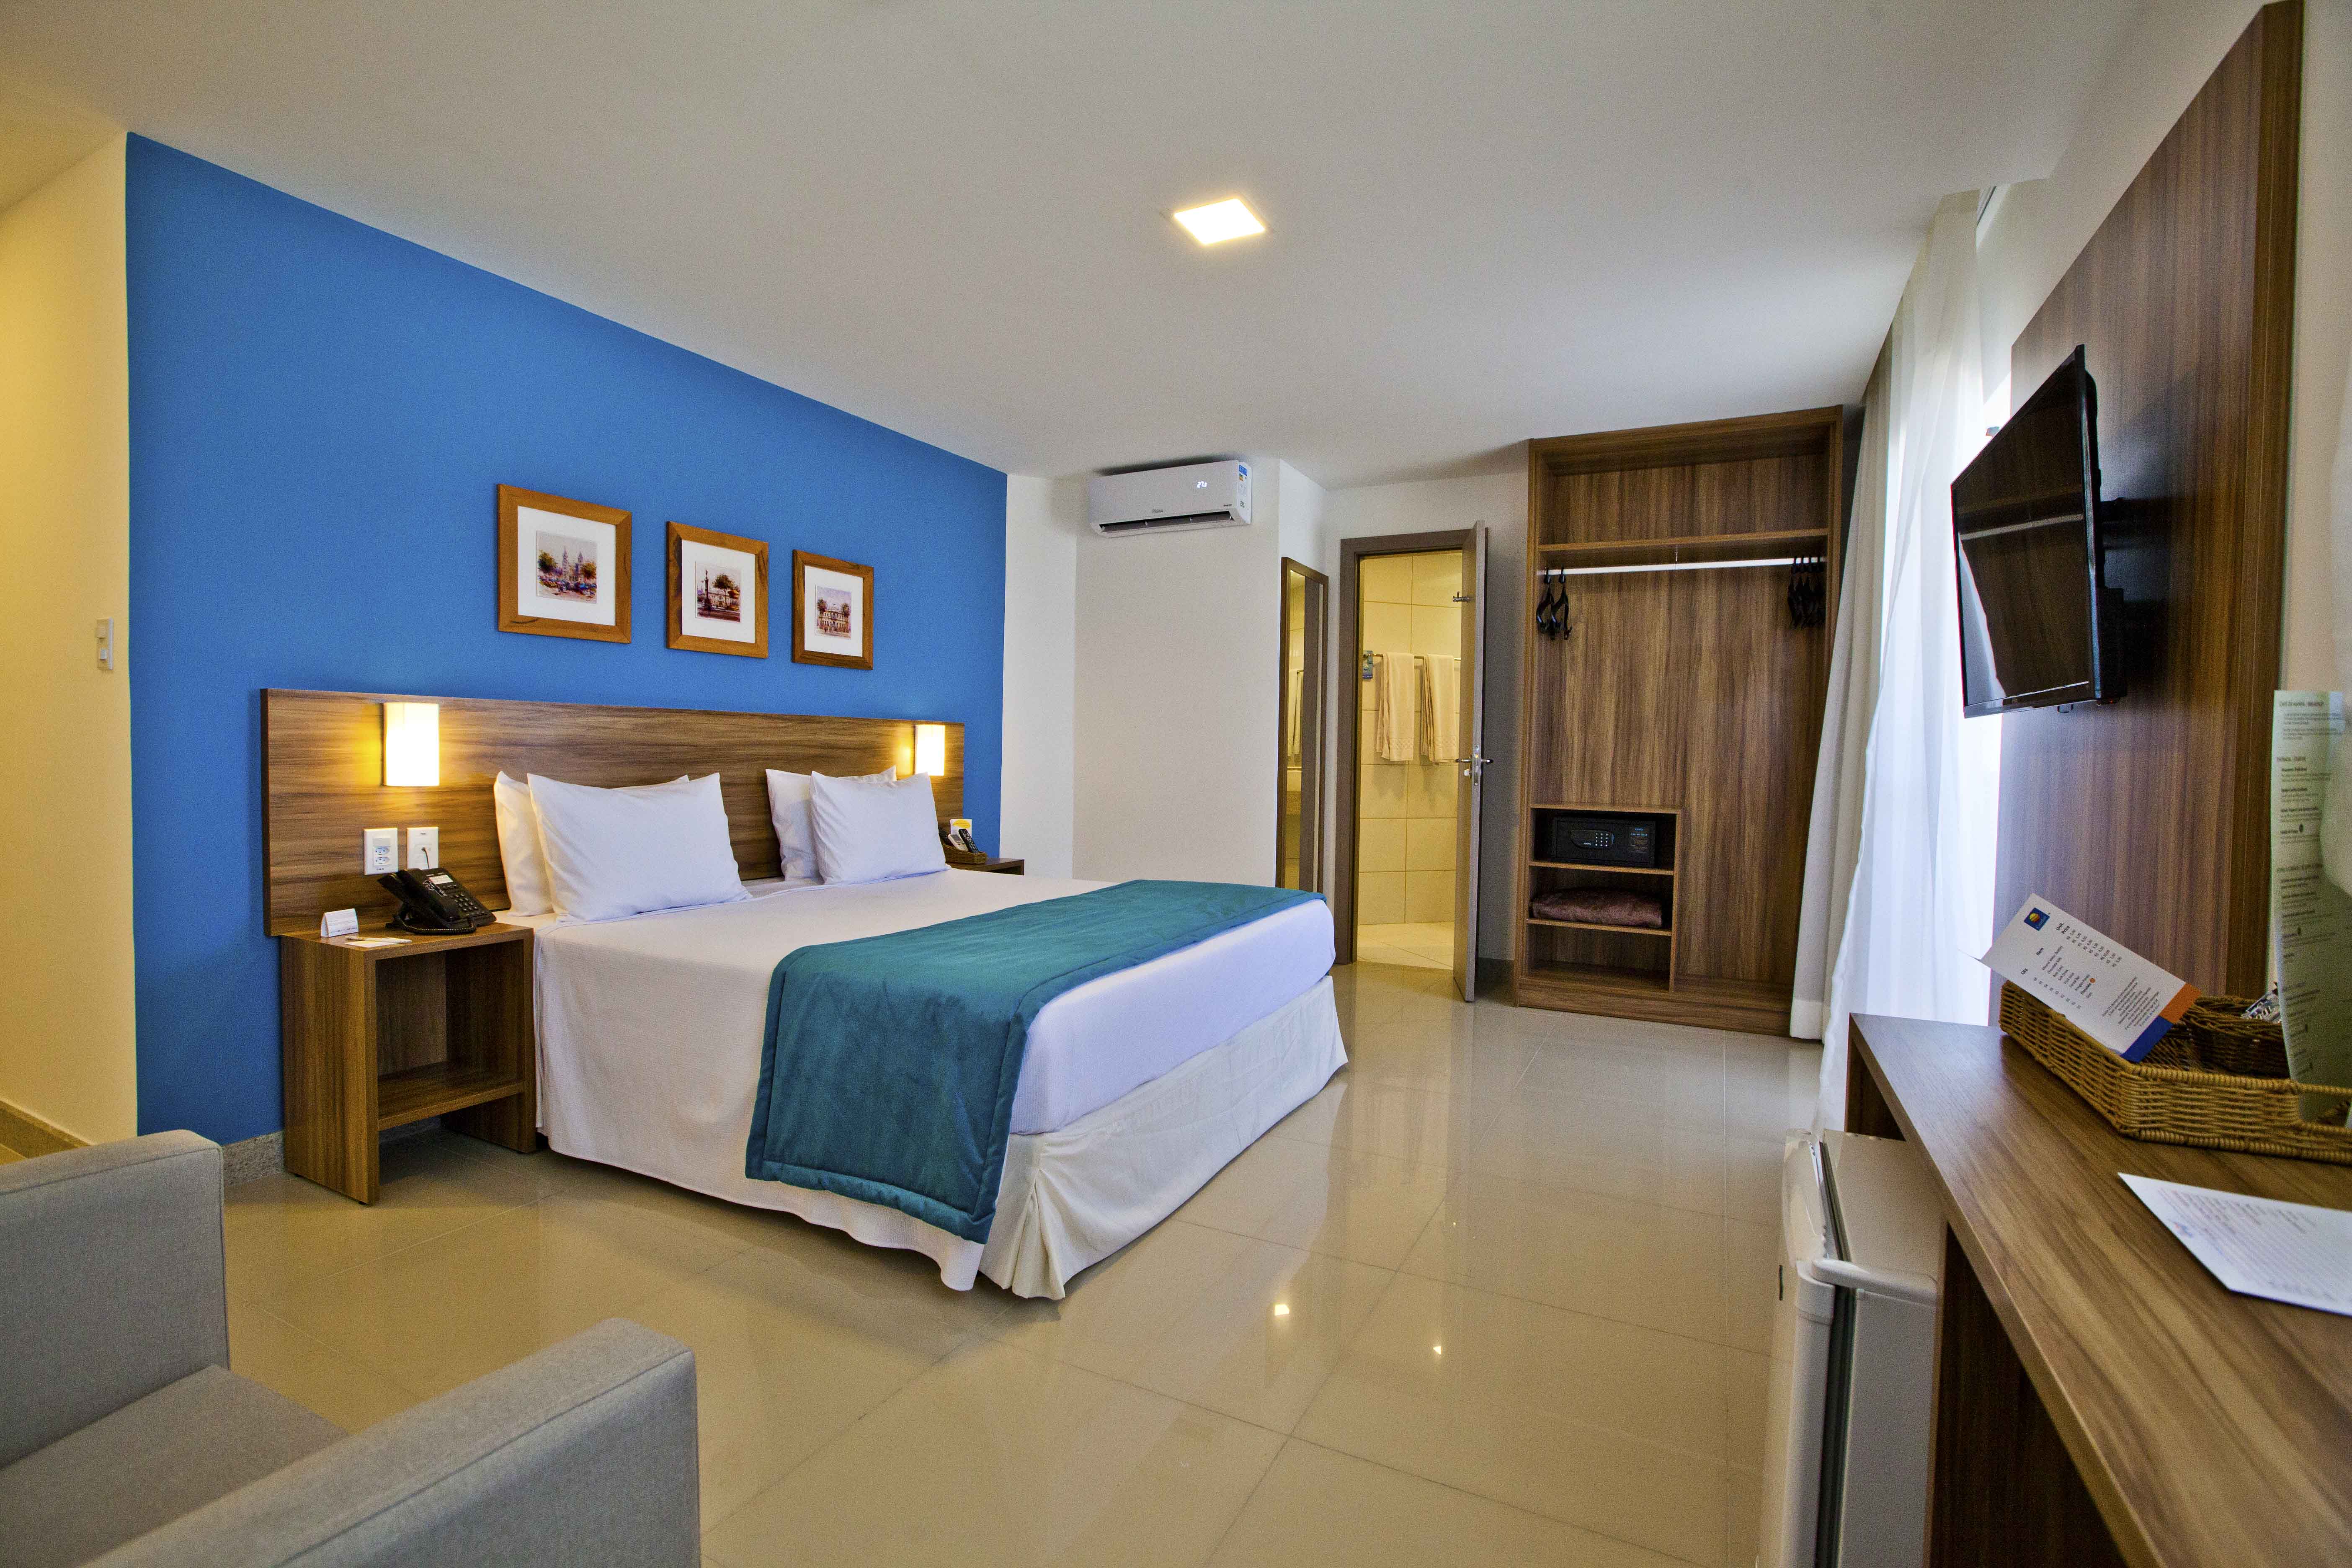 Comfort Hotel Aracaju, Aracaju, Hotéis em Aracaju, Lugar Perfeito, Comfort, Hotel, Fotos de Aracaju, Sergipe